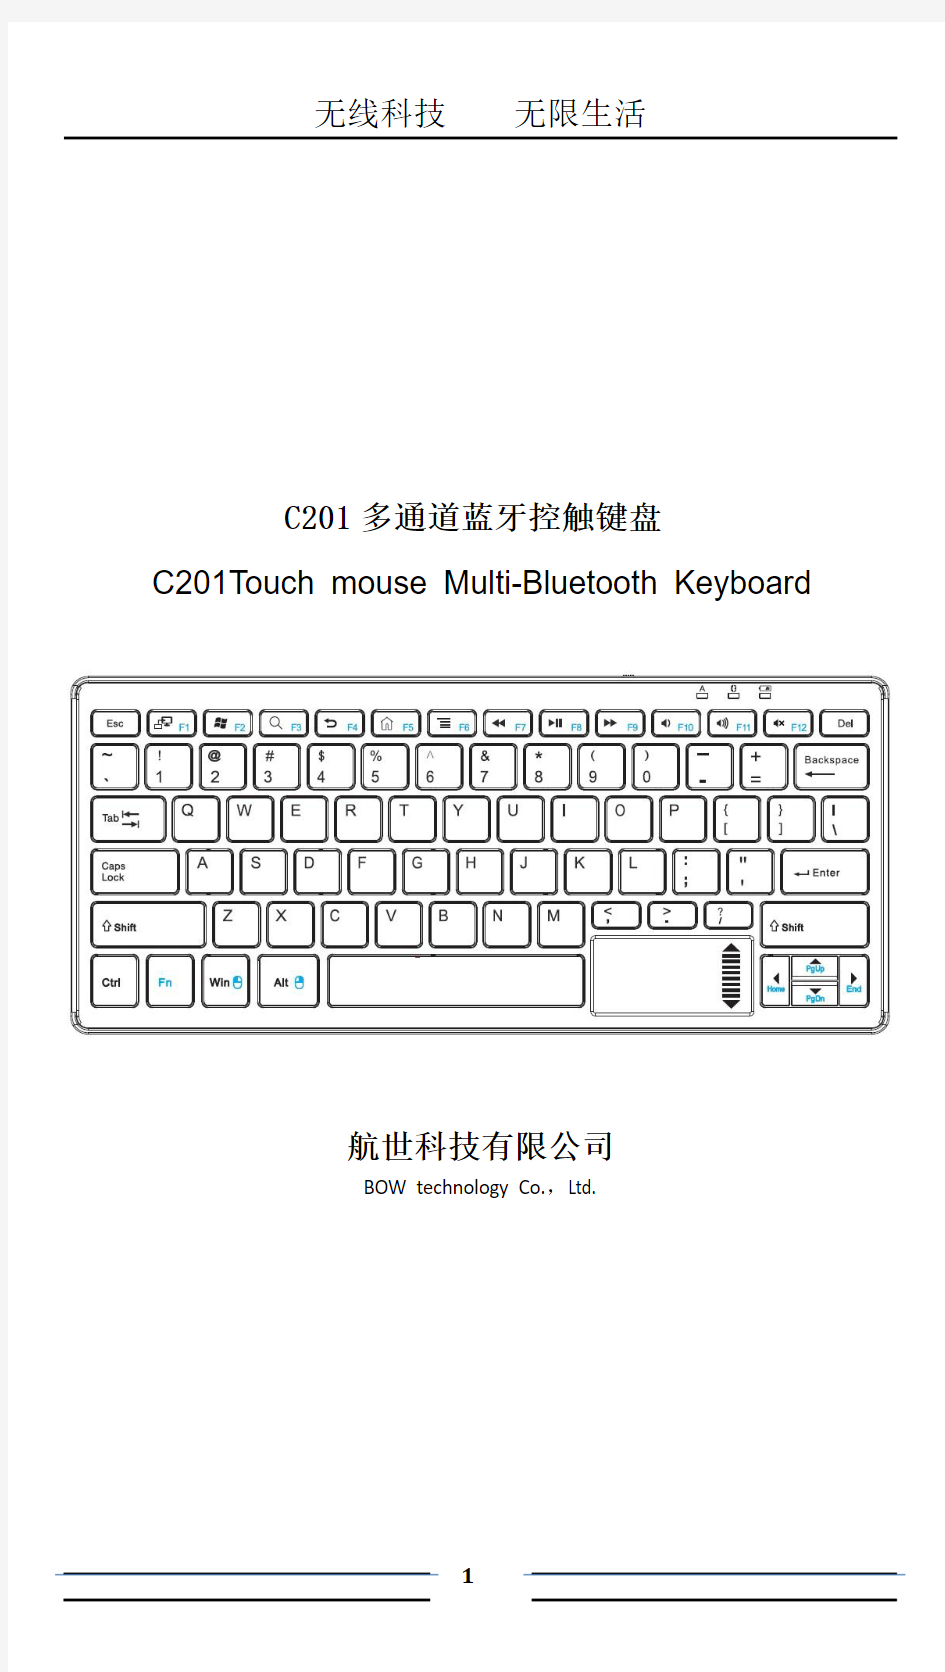 航世BOWC201蓝牙键盘说明书(R6)